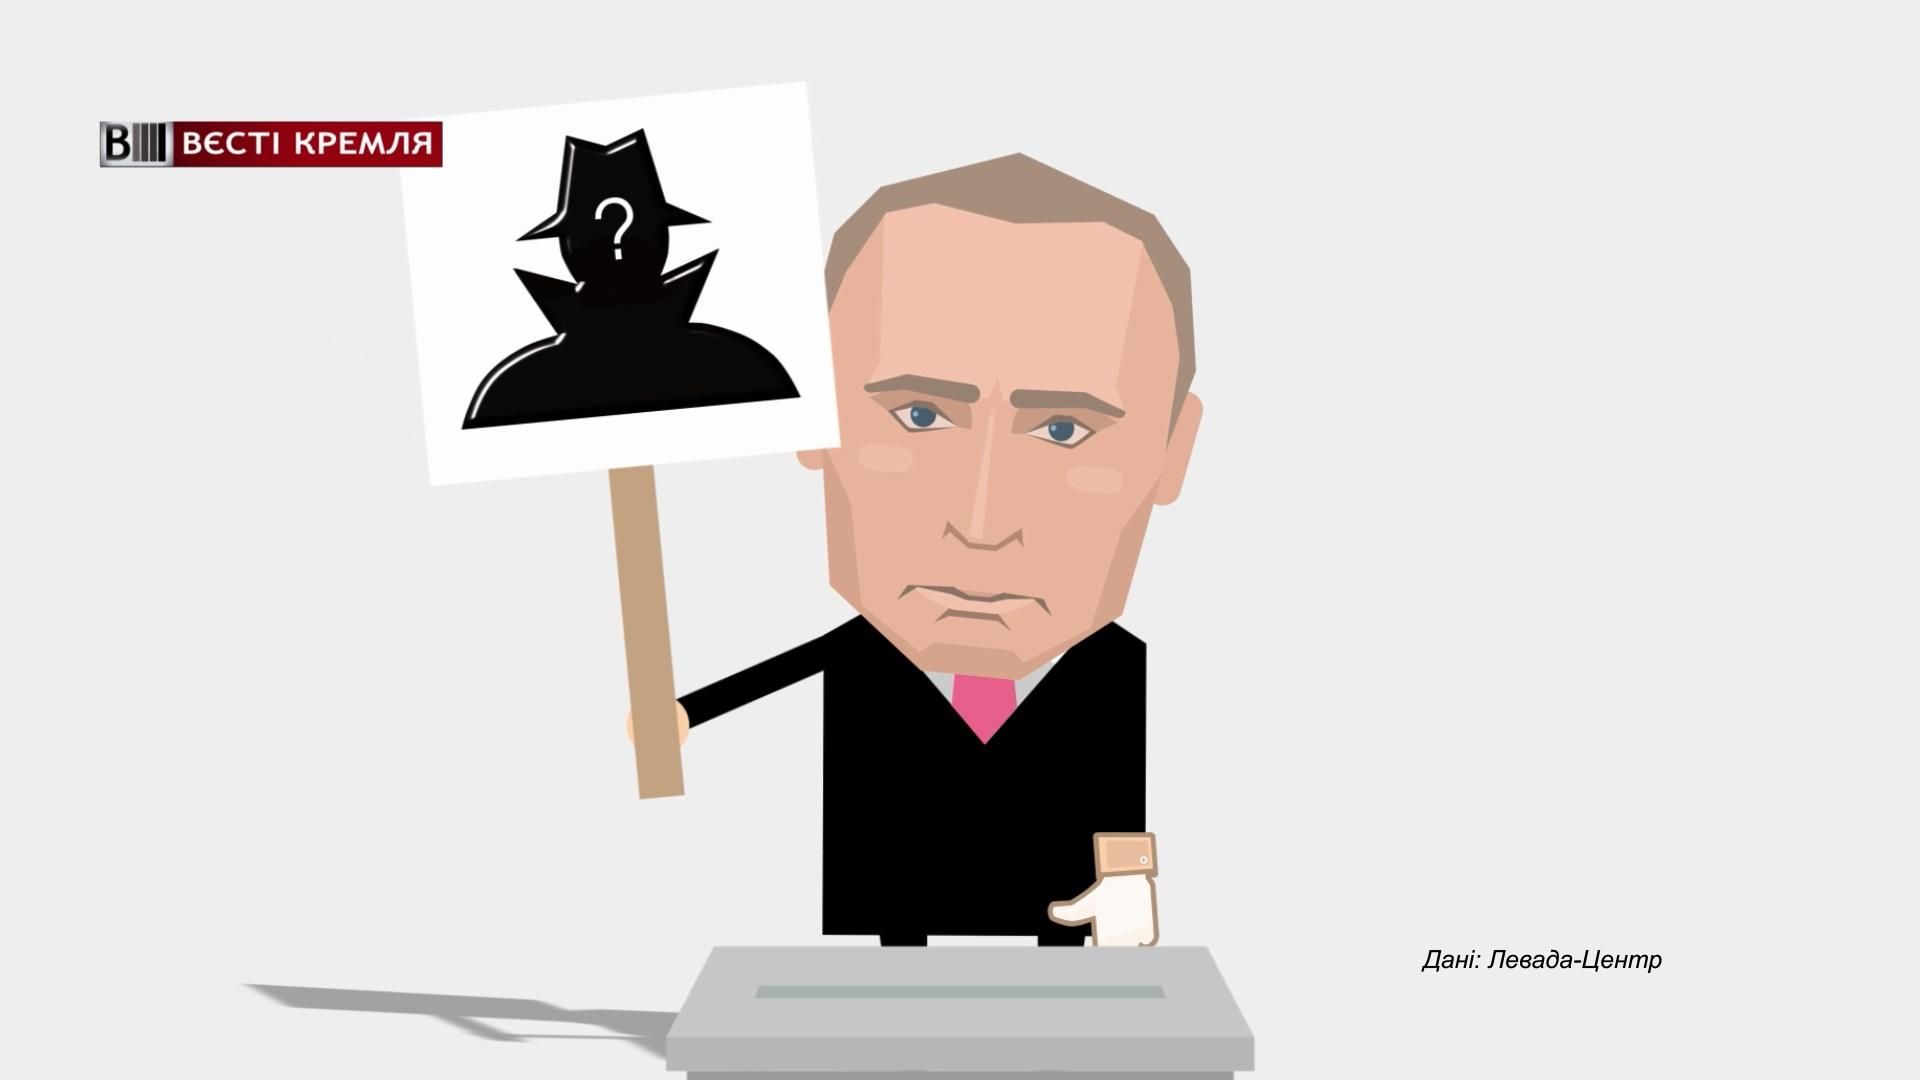 Скільки росіян готові голосувати за "чорта лисого": вражаюча статистика